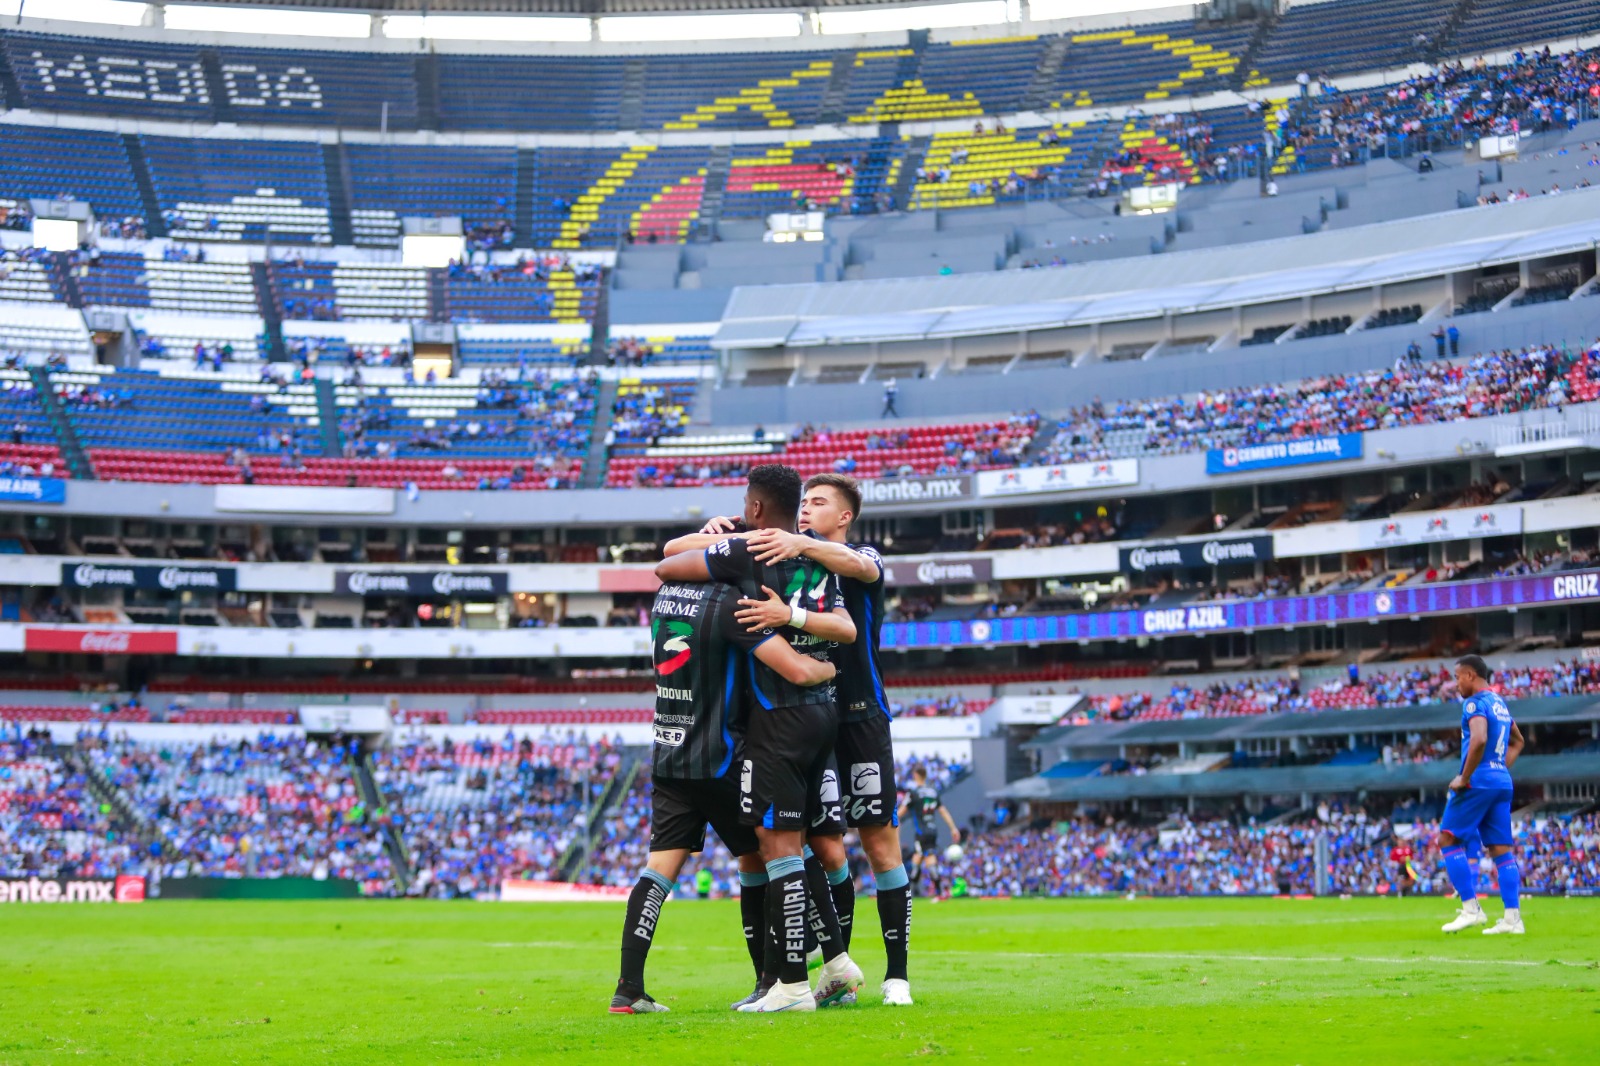 Gallos da la sorpresa y derrota a Cruz Azul en el estadio Azteca